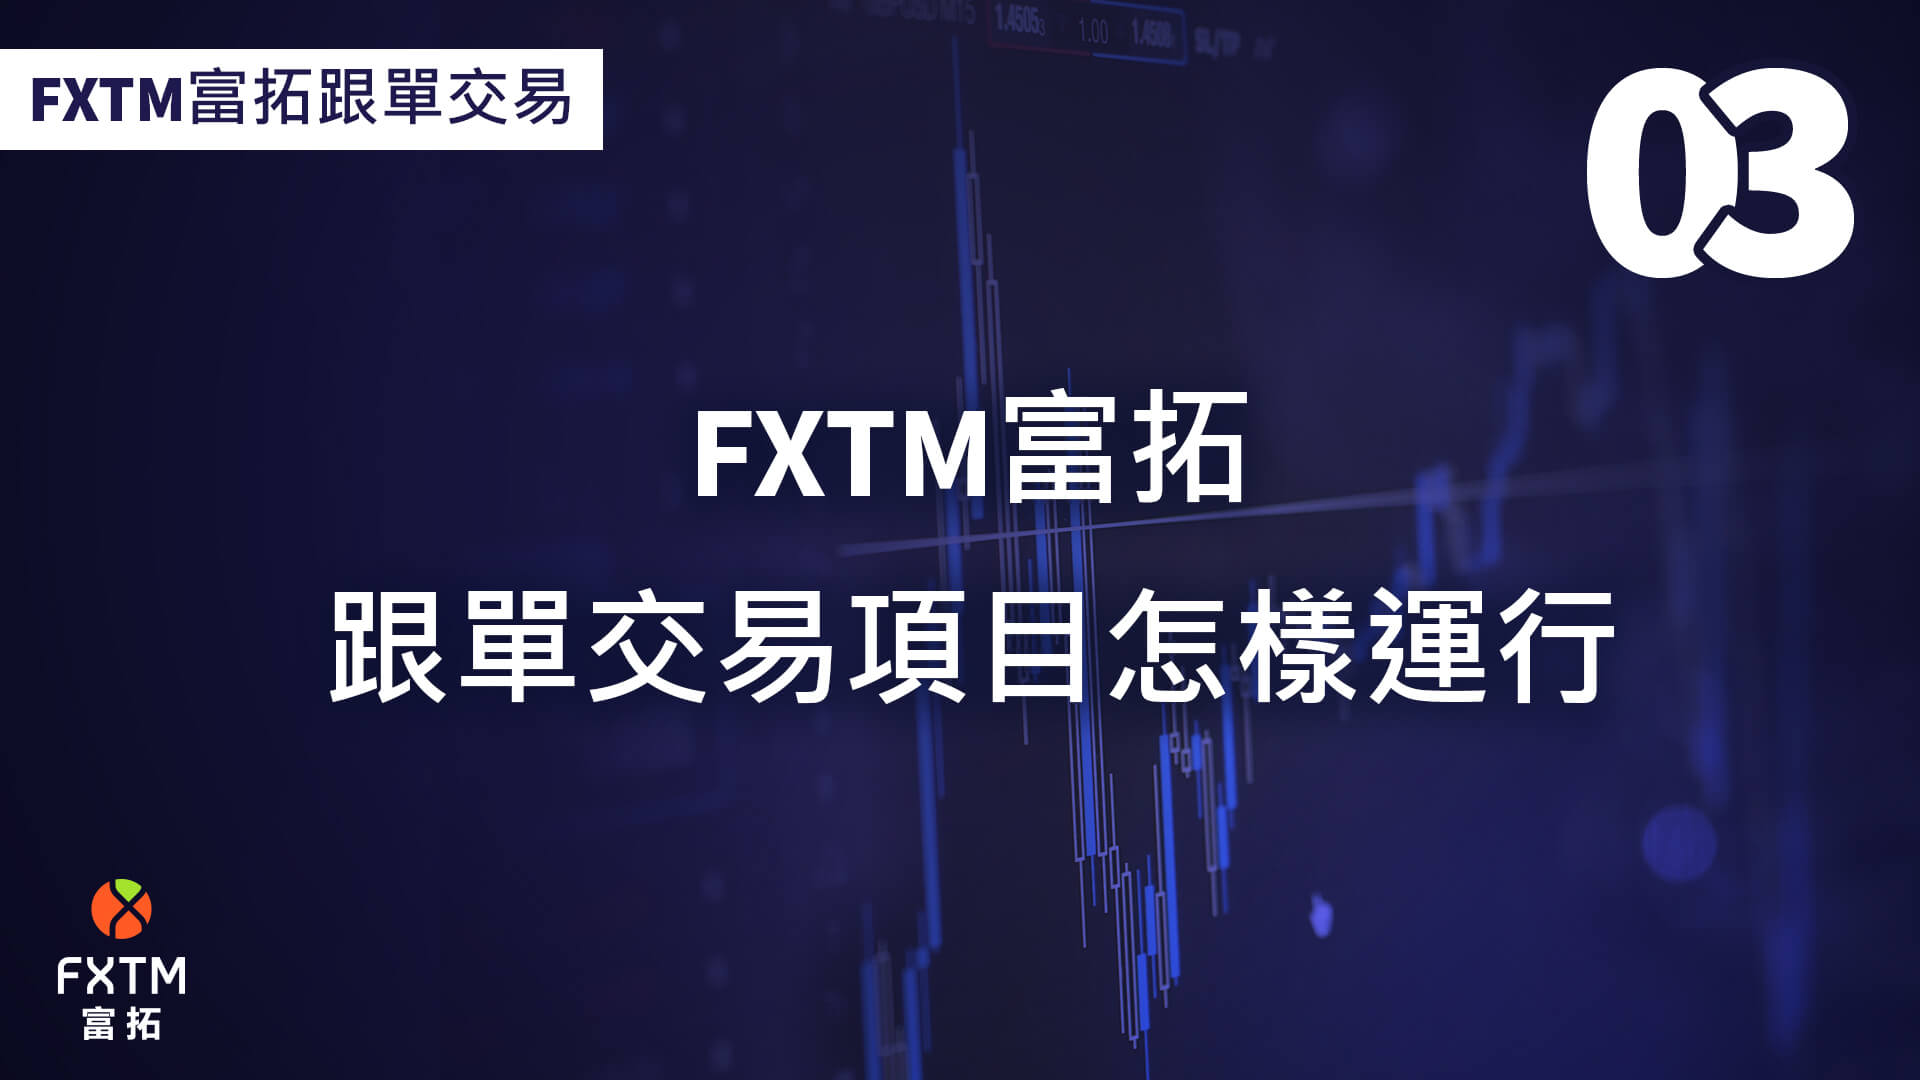 FXTM富拓跟單交易項目如何運作